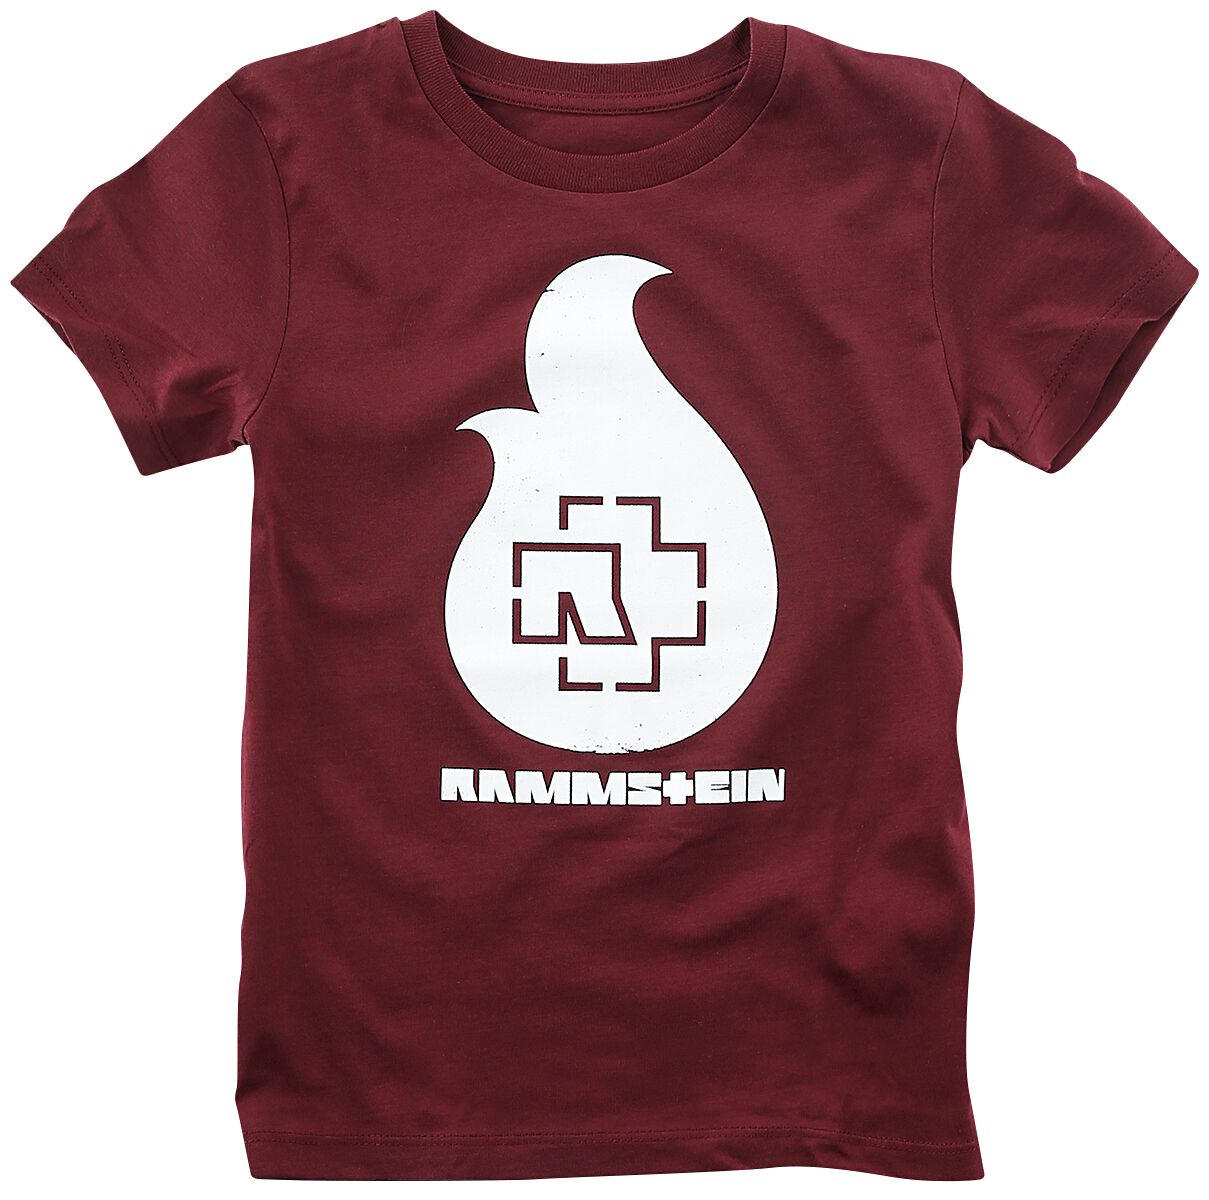 Rammstein T-Shirt für Kinder - Kids - Flamme - für Mädchen & Jungen - burgund  - Lizenziertes Merchandise!